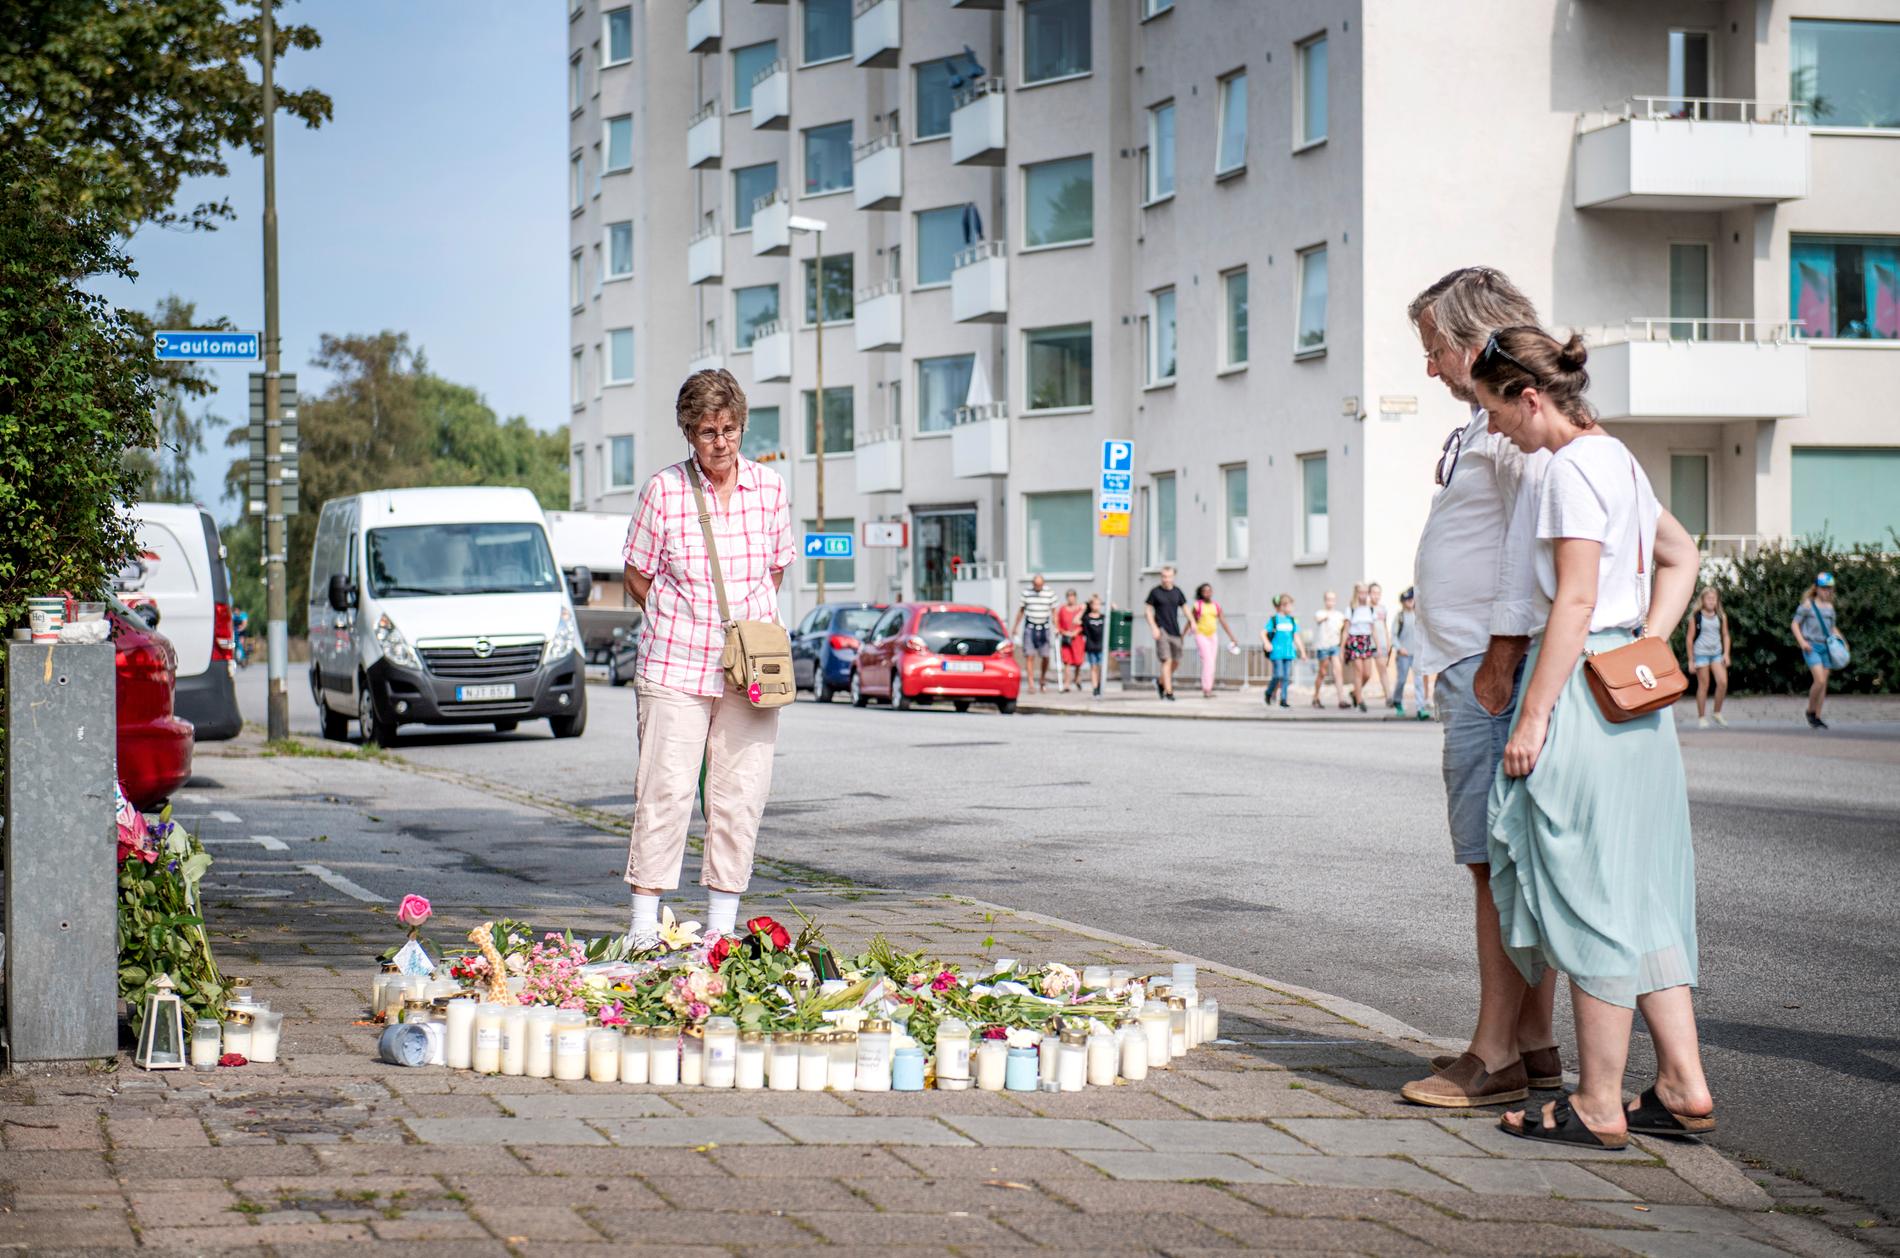 Mordet ägde rum i stadsdelen Ribersborg, förr kallad ”käppastaden” med många äldre invånare. Nu har barnfamiljerna flyttat in. 